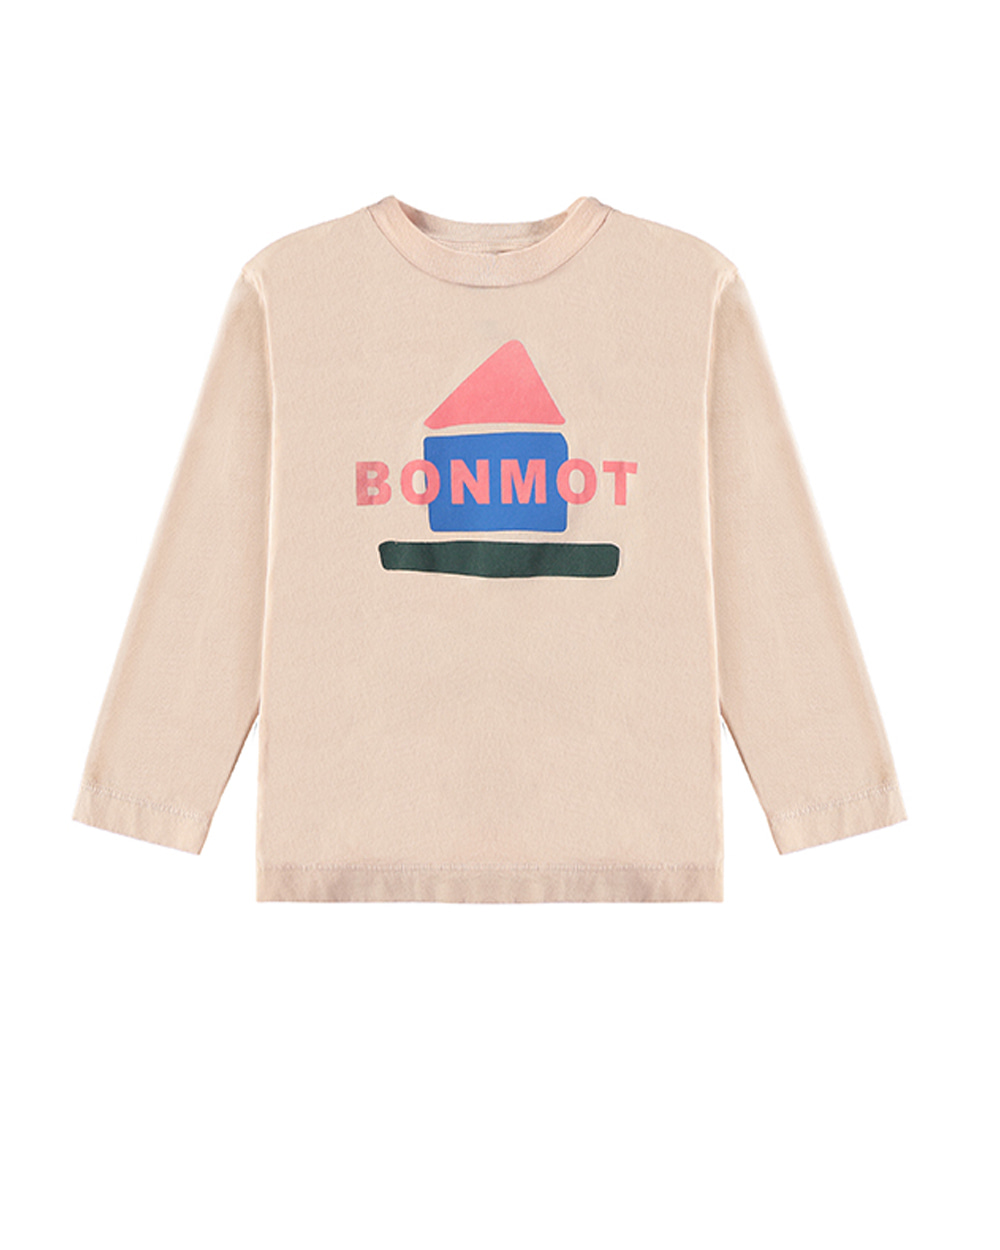 [BONMOT]T-shirt bonmot forever home /Fog